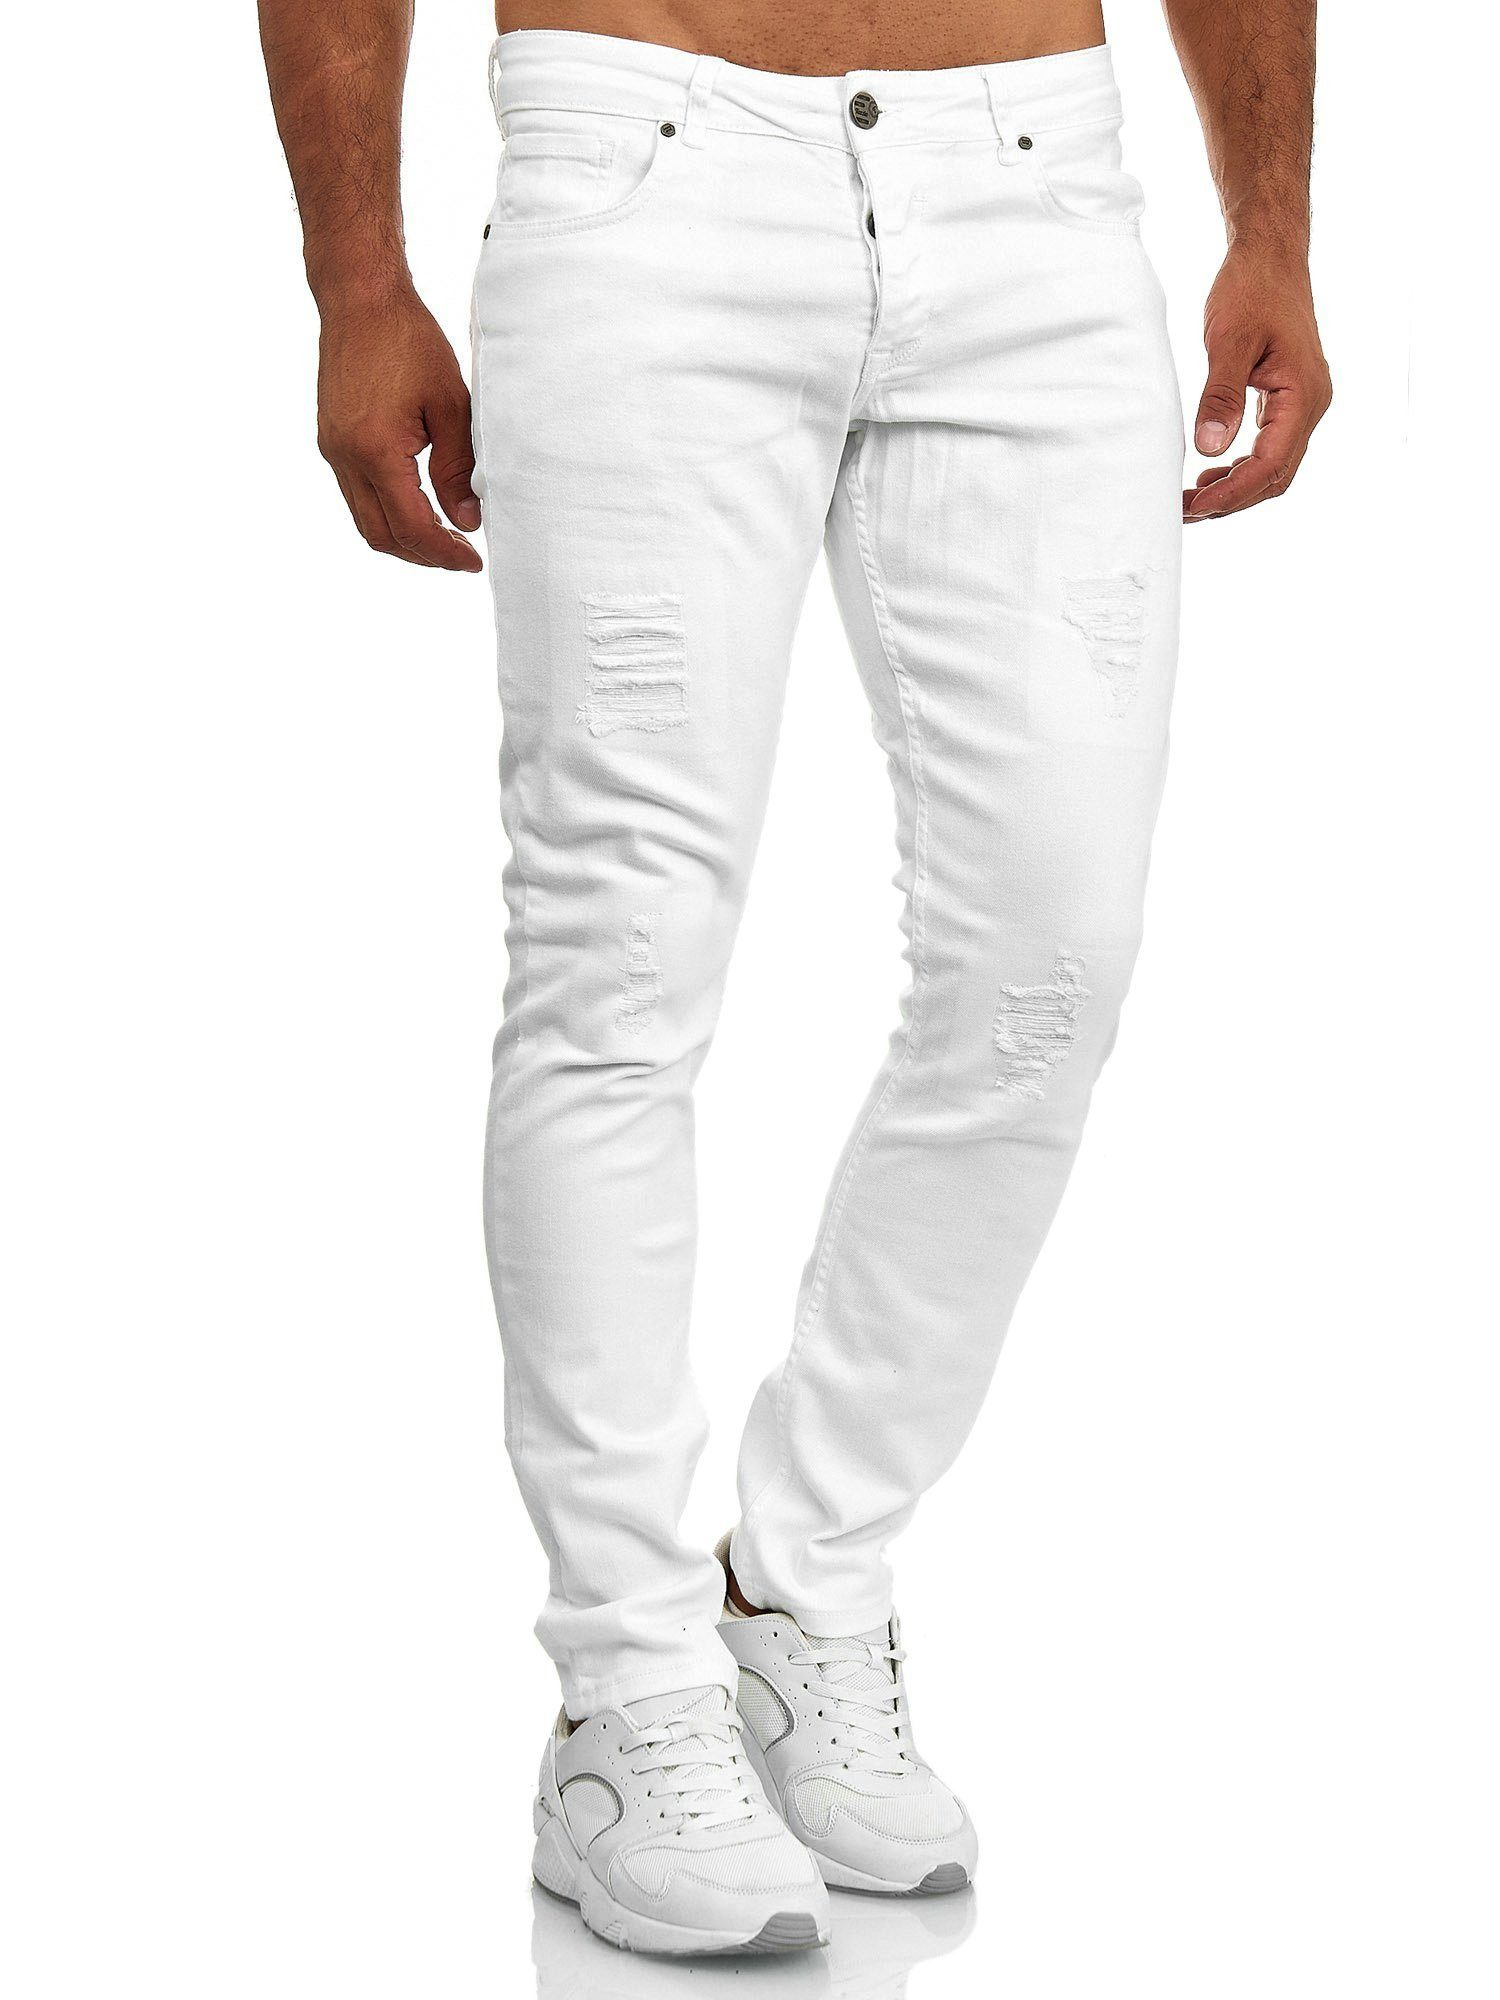 Weiße Herren Stretch Jeans online kaufen | OTTO